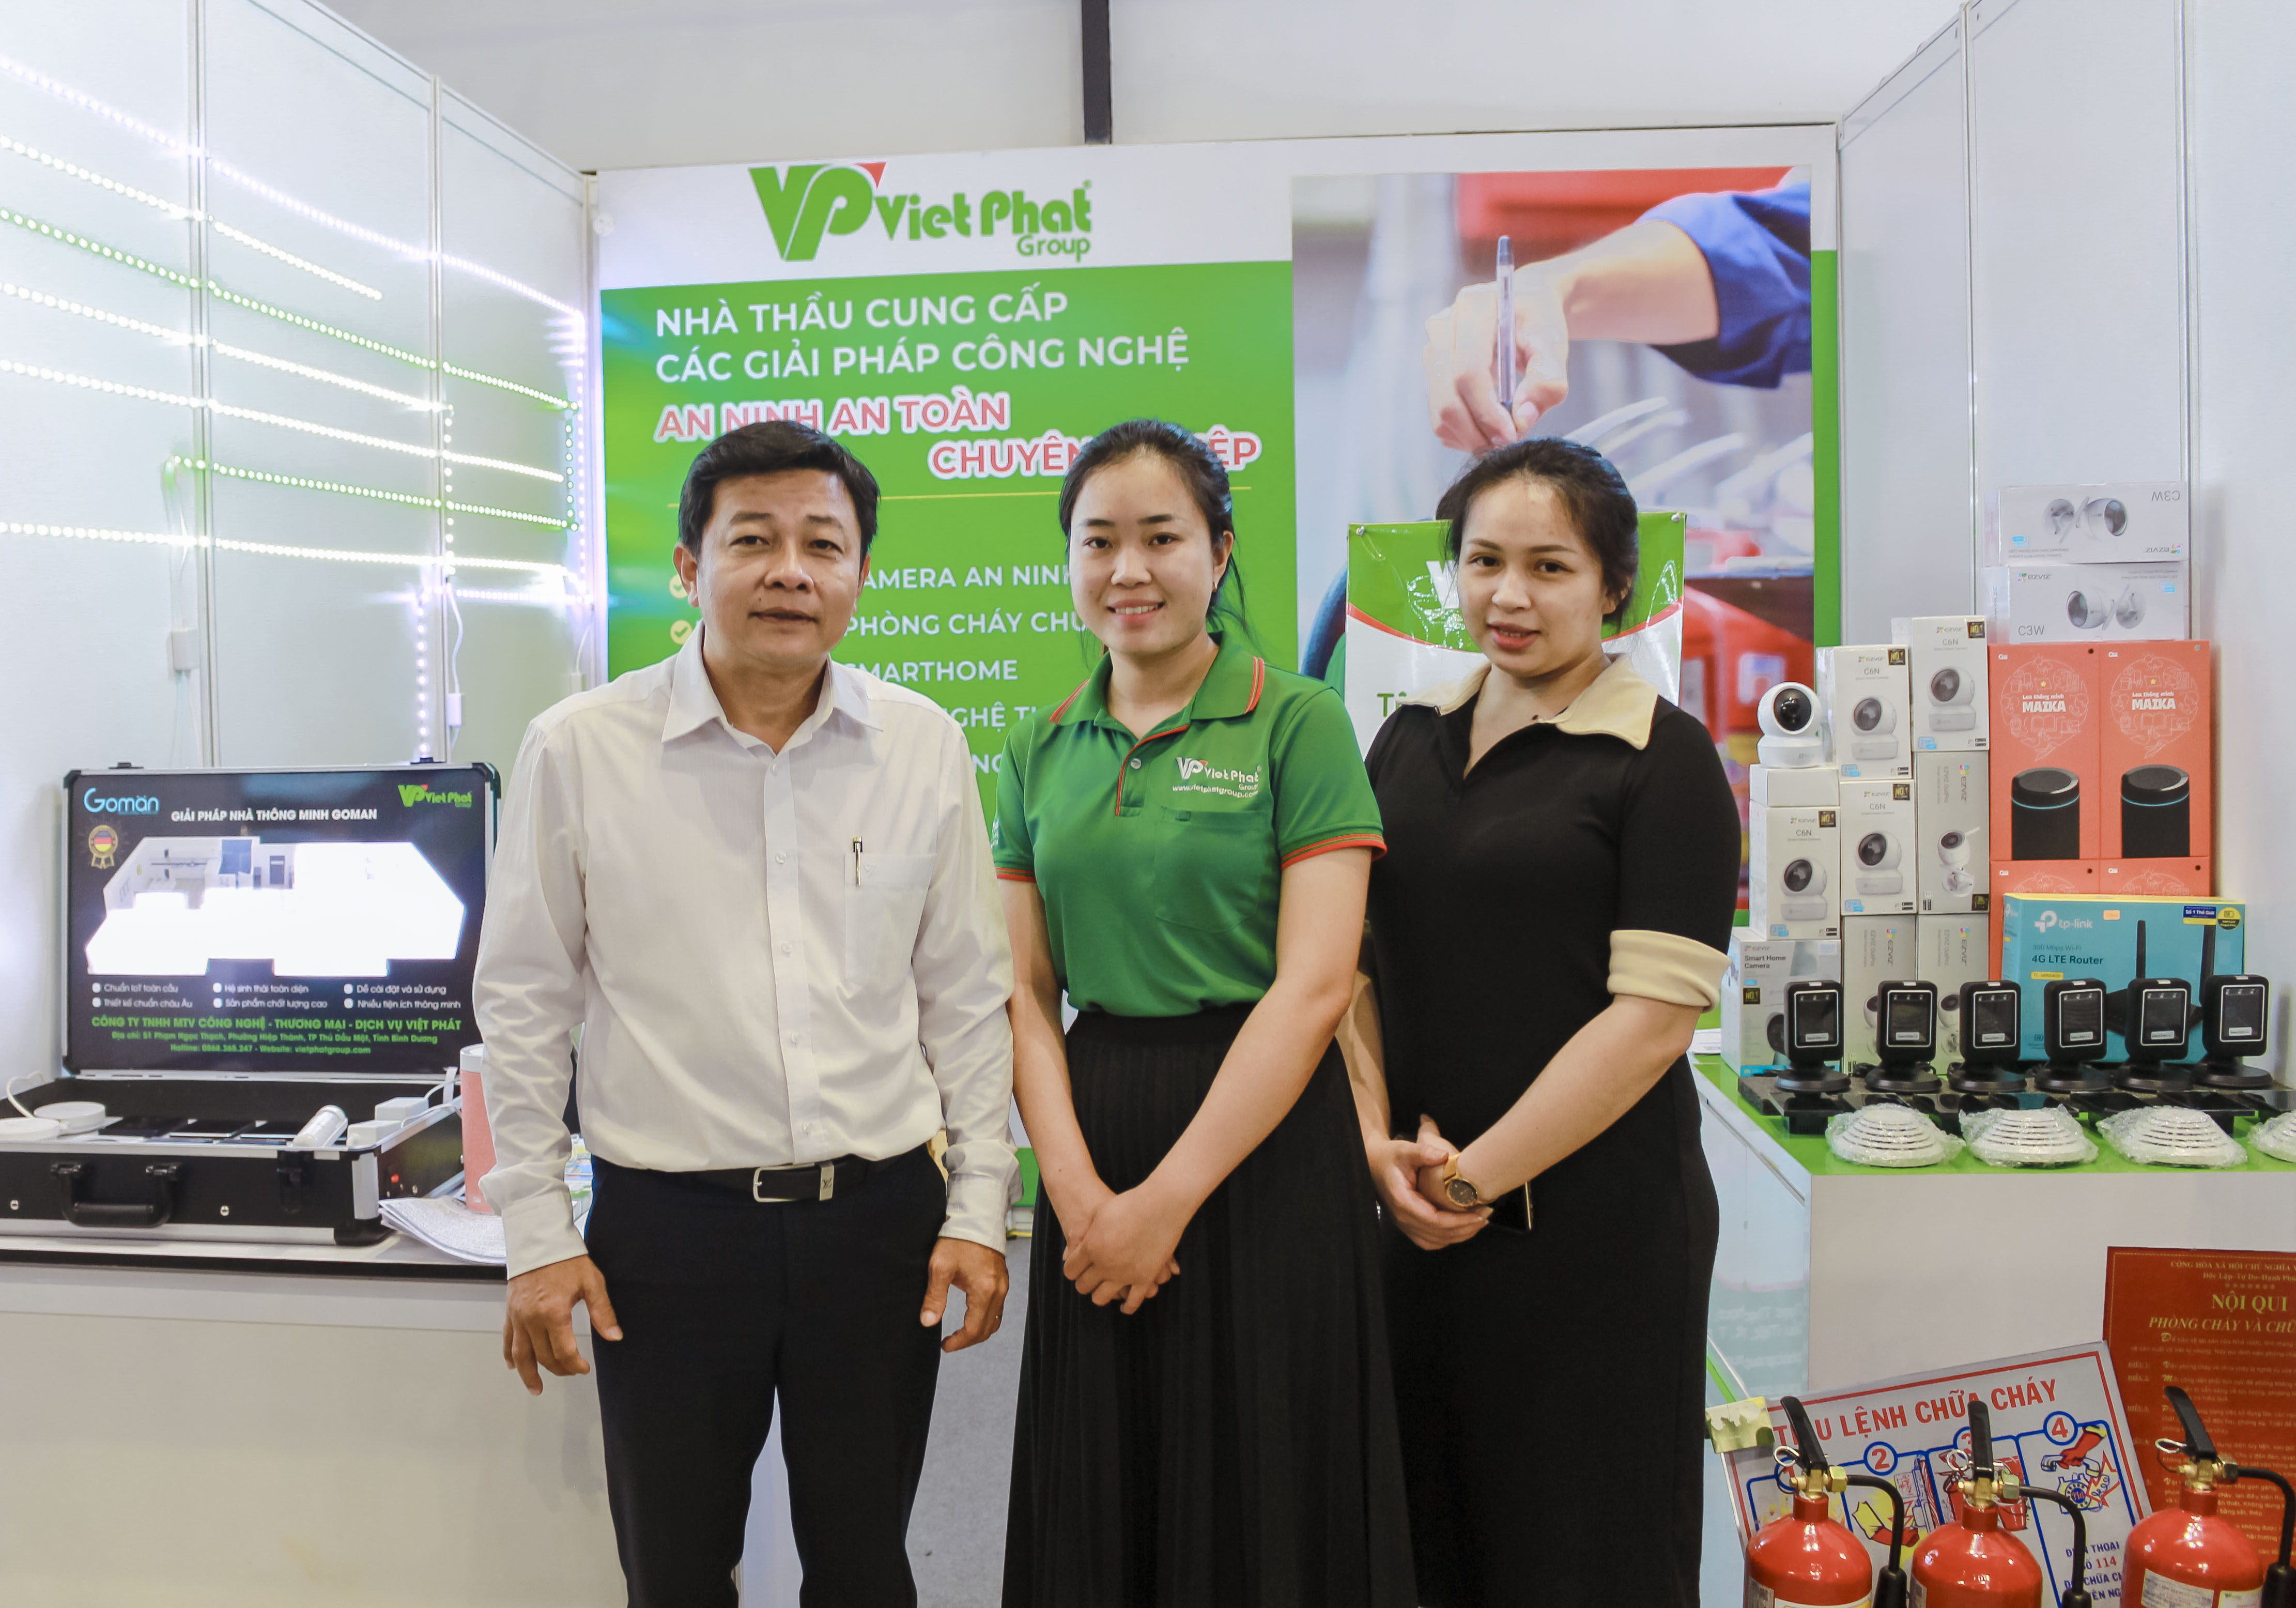 VietPhatGroup tham gia hội chợ triển lãm Bình Dương EXPO 2022 – Kết nối cung cầu hàng hóa